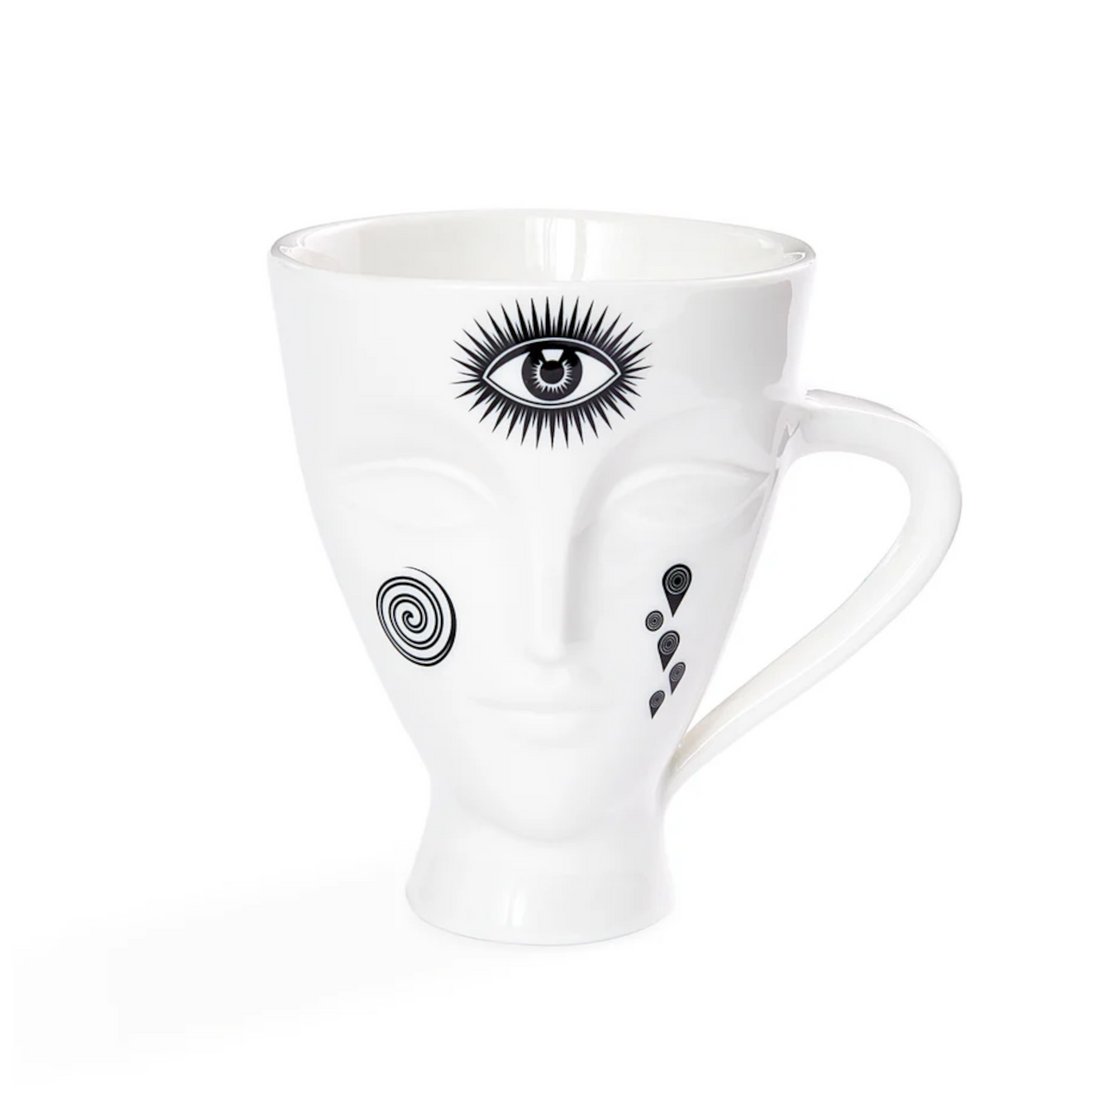 INKED GIULIETTE porcelain mug